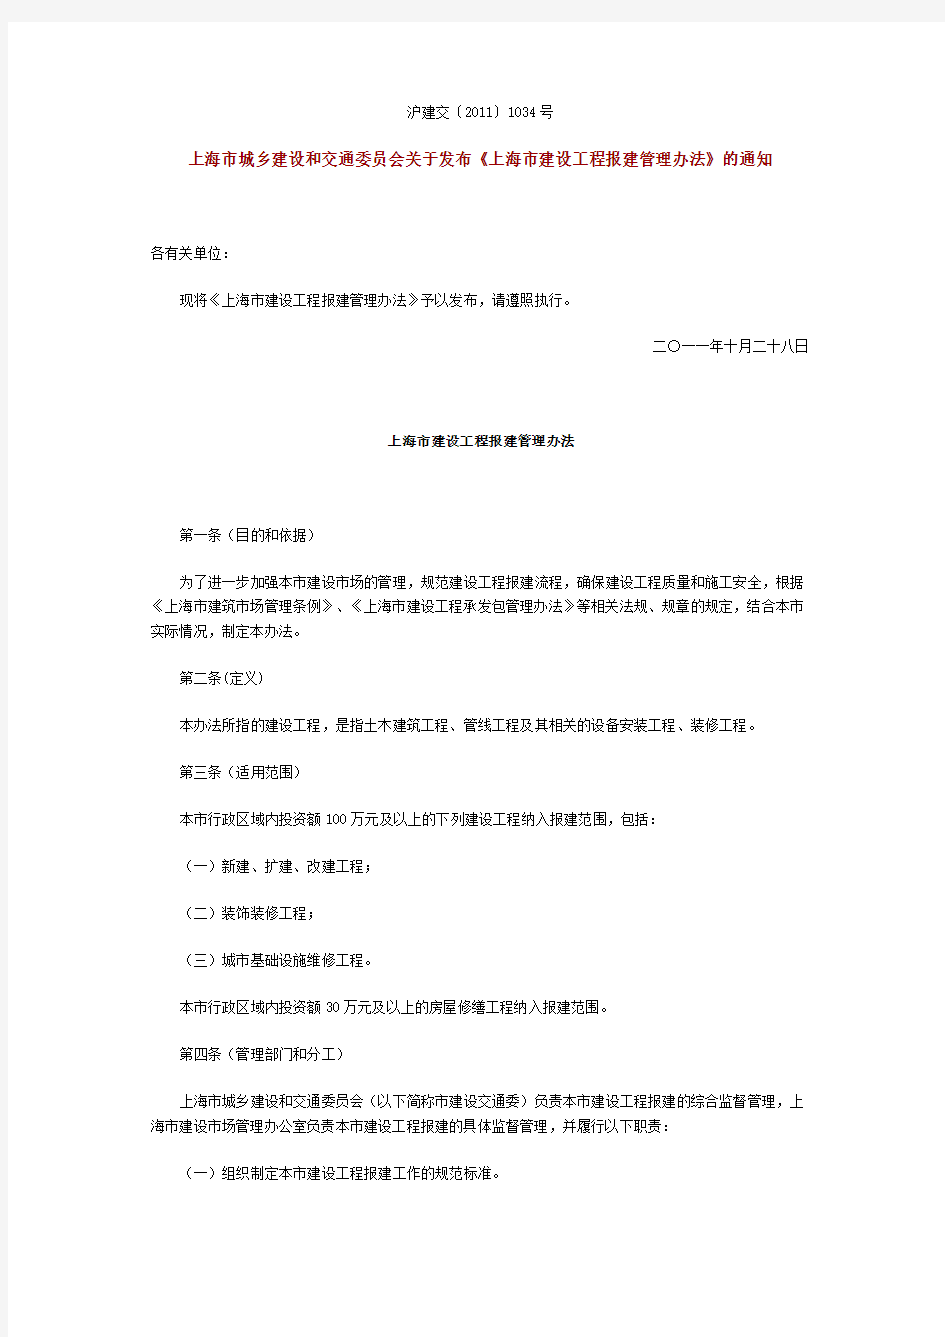 上海市城乡建设和交通委员会关于发布《上海市建设工程报建管理办法》的通知